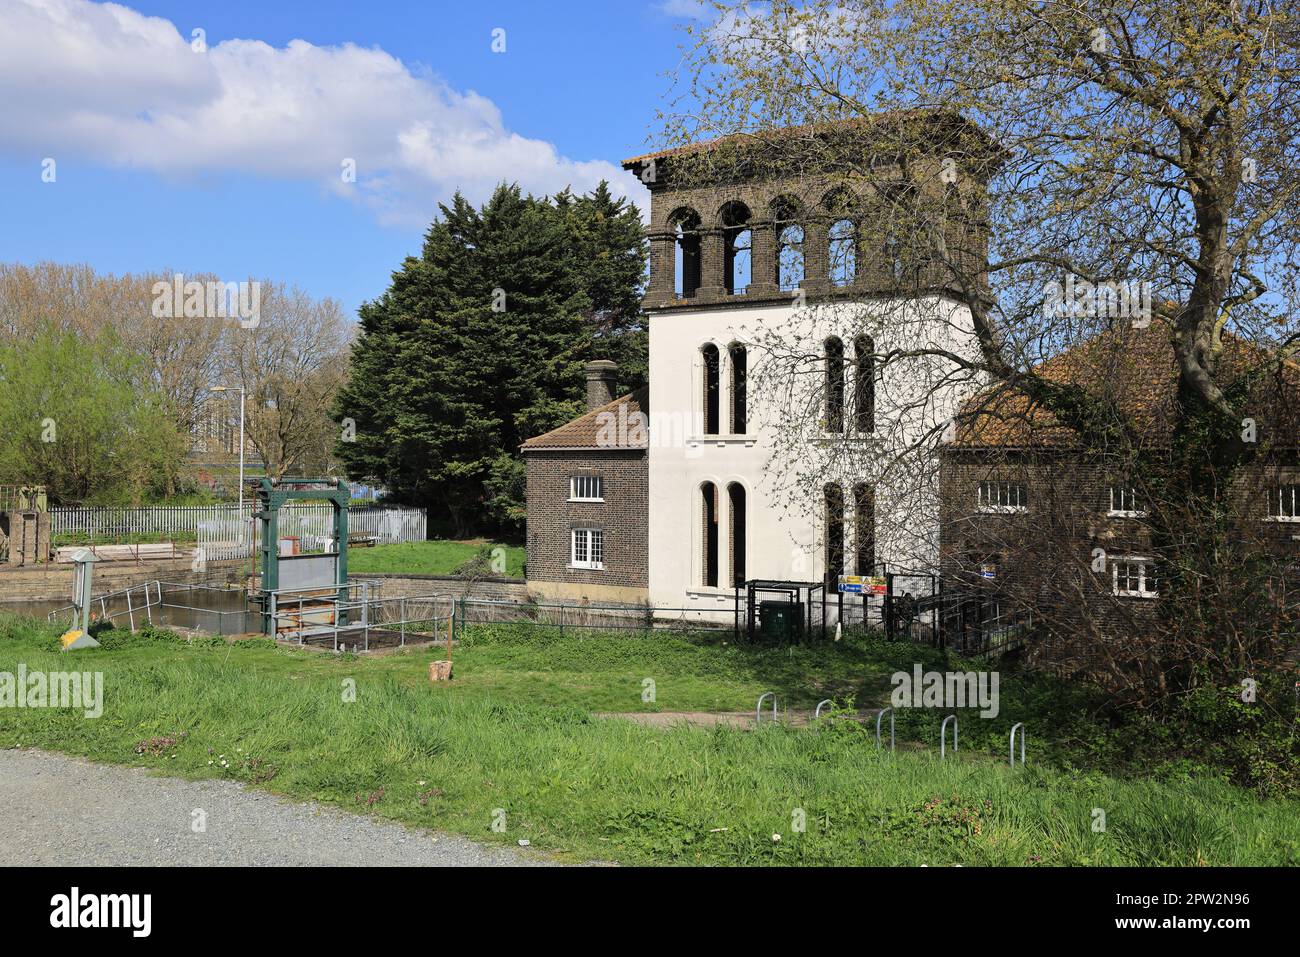 Der historische Coppermill Tower in Walthamstow Wetlands, London Wildlife Trust, Großbritannien Stockfoto